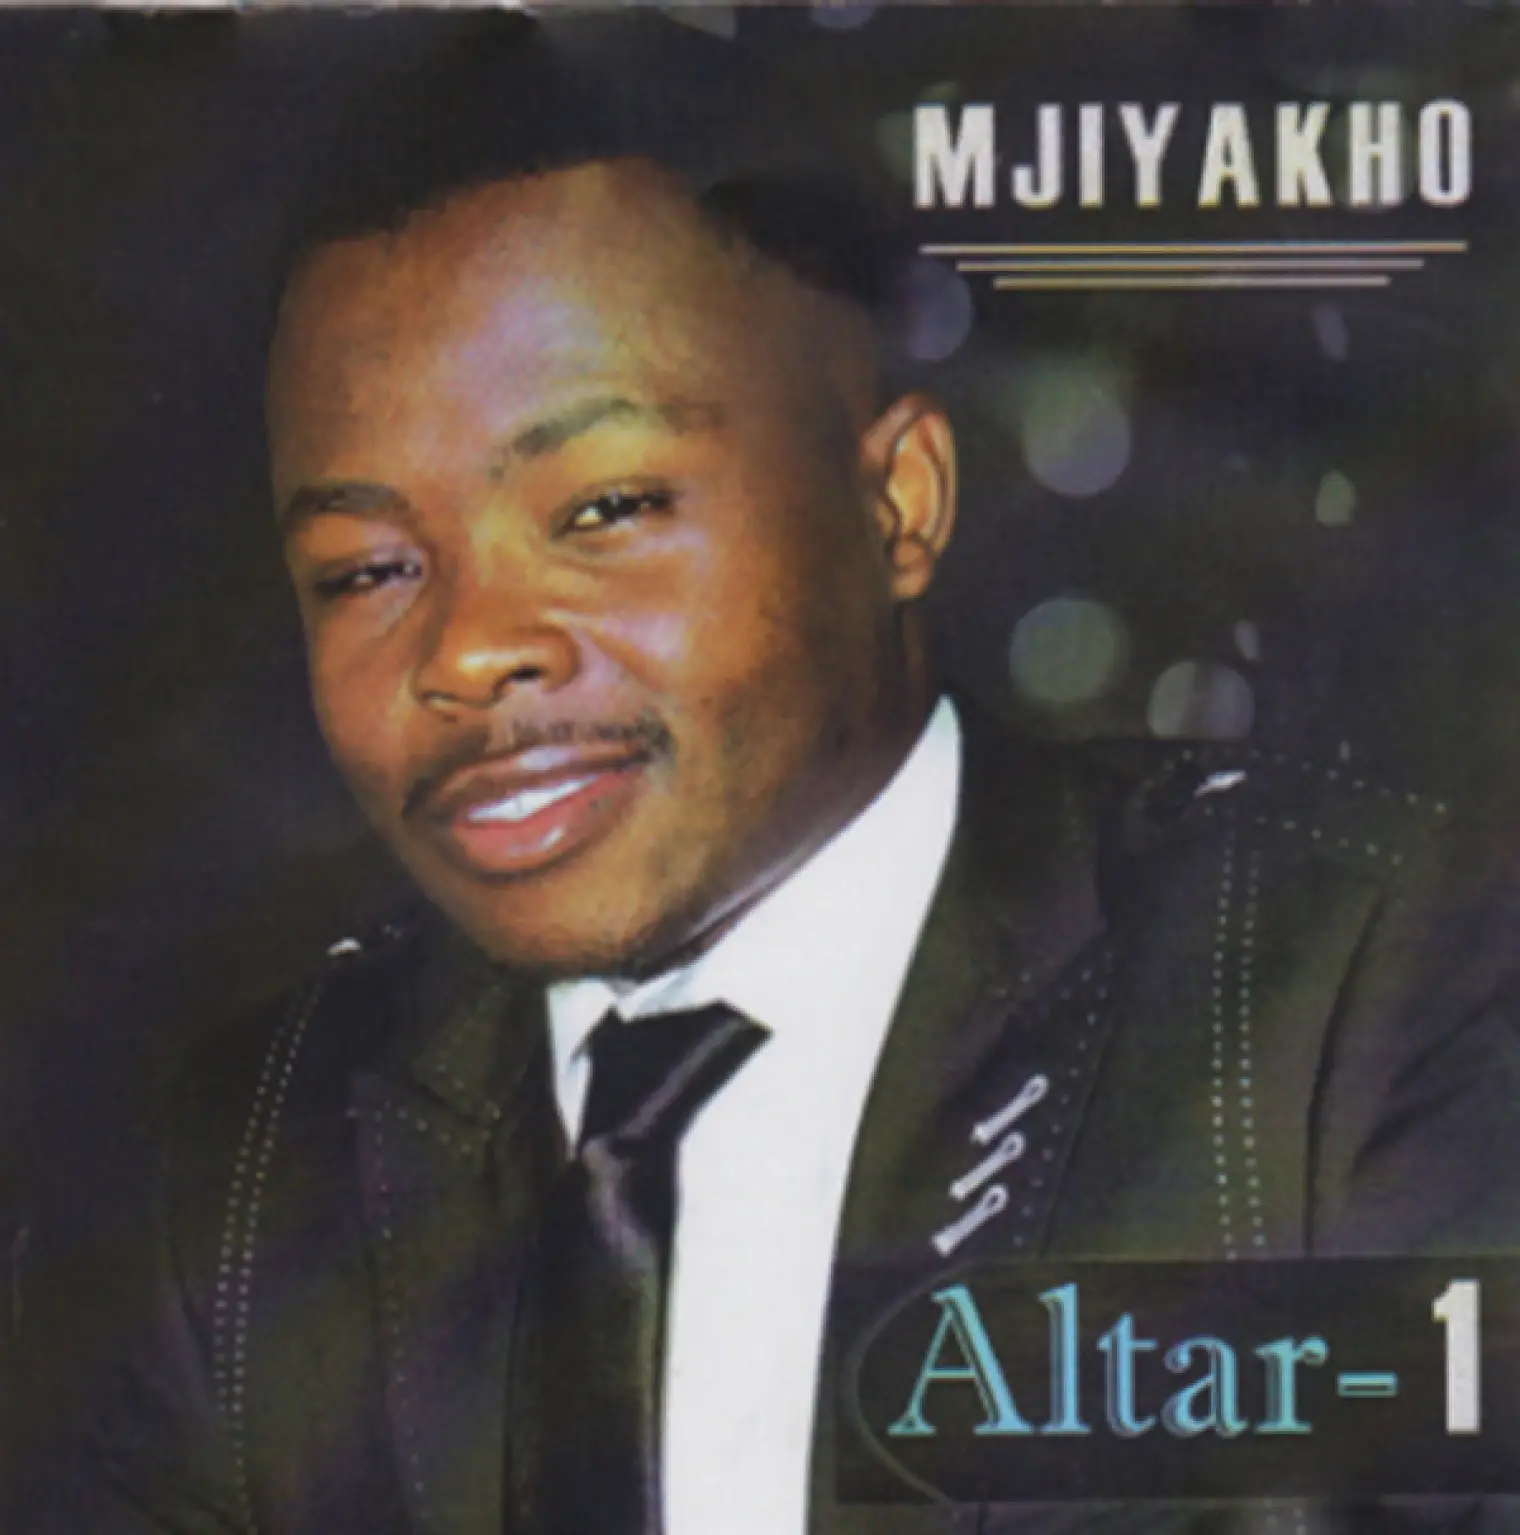 Altar - 1 -  Mjiyakho 